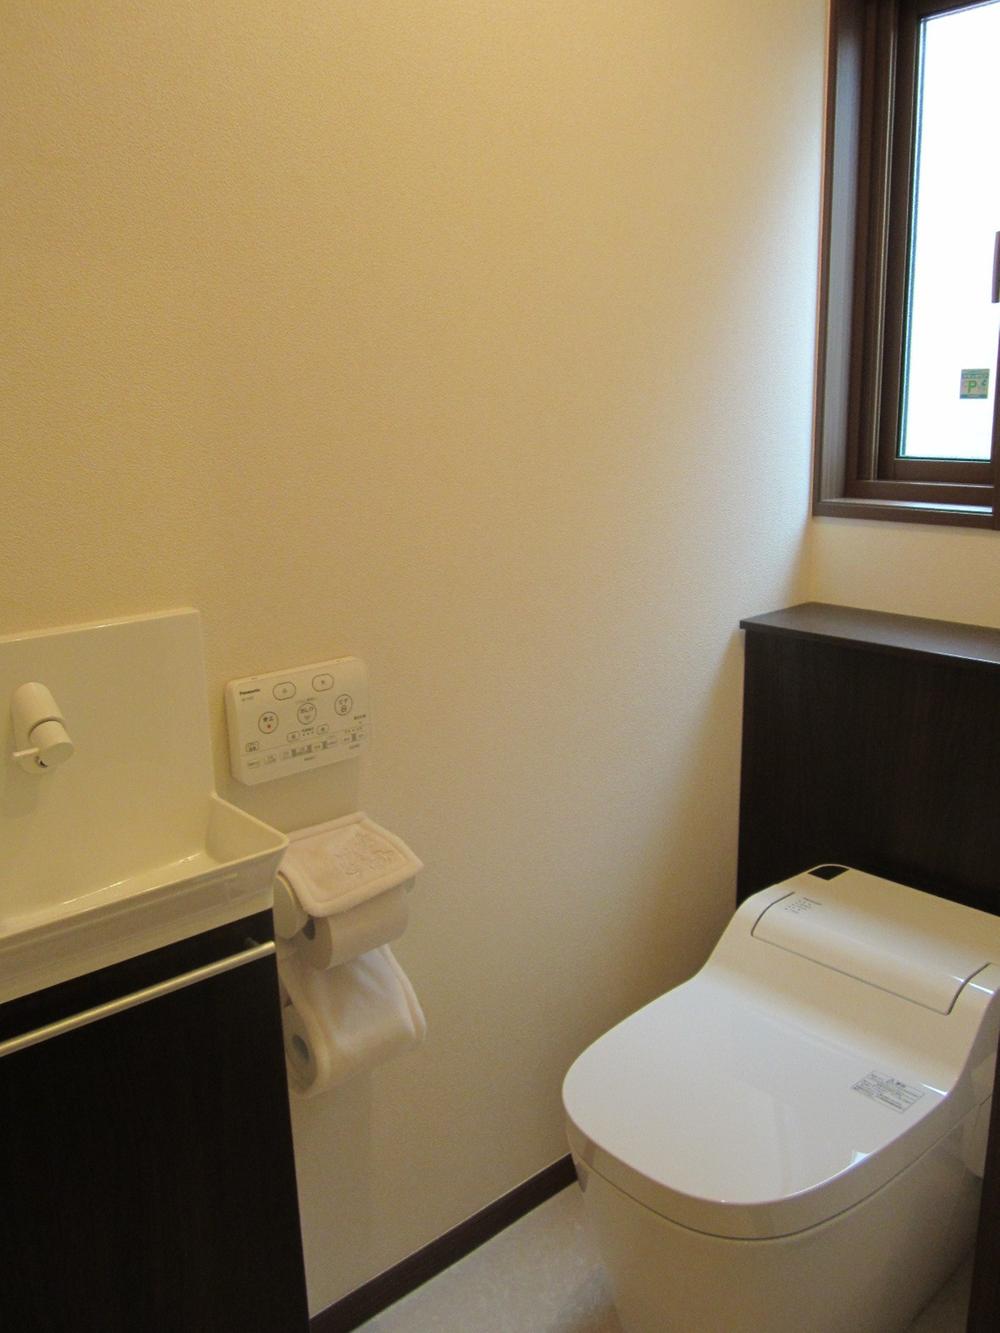 Toilet. First floor toilet / Indoor (June 2013) Shooting